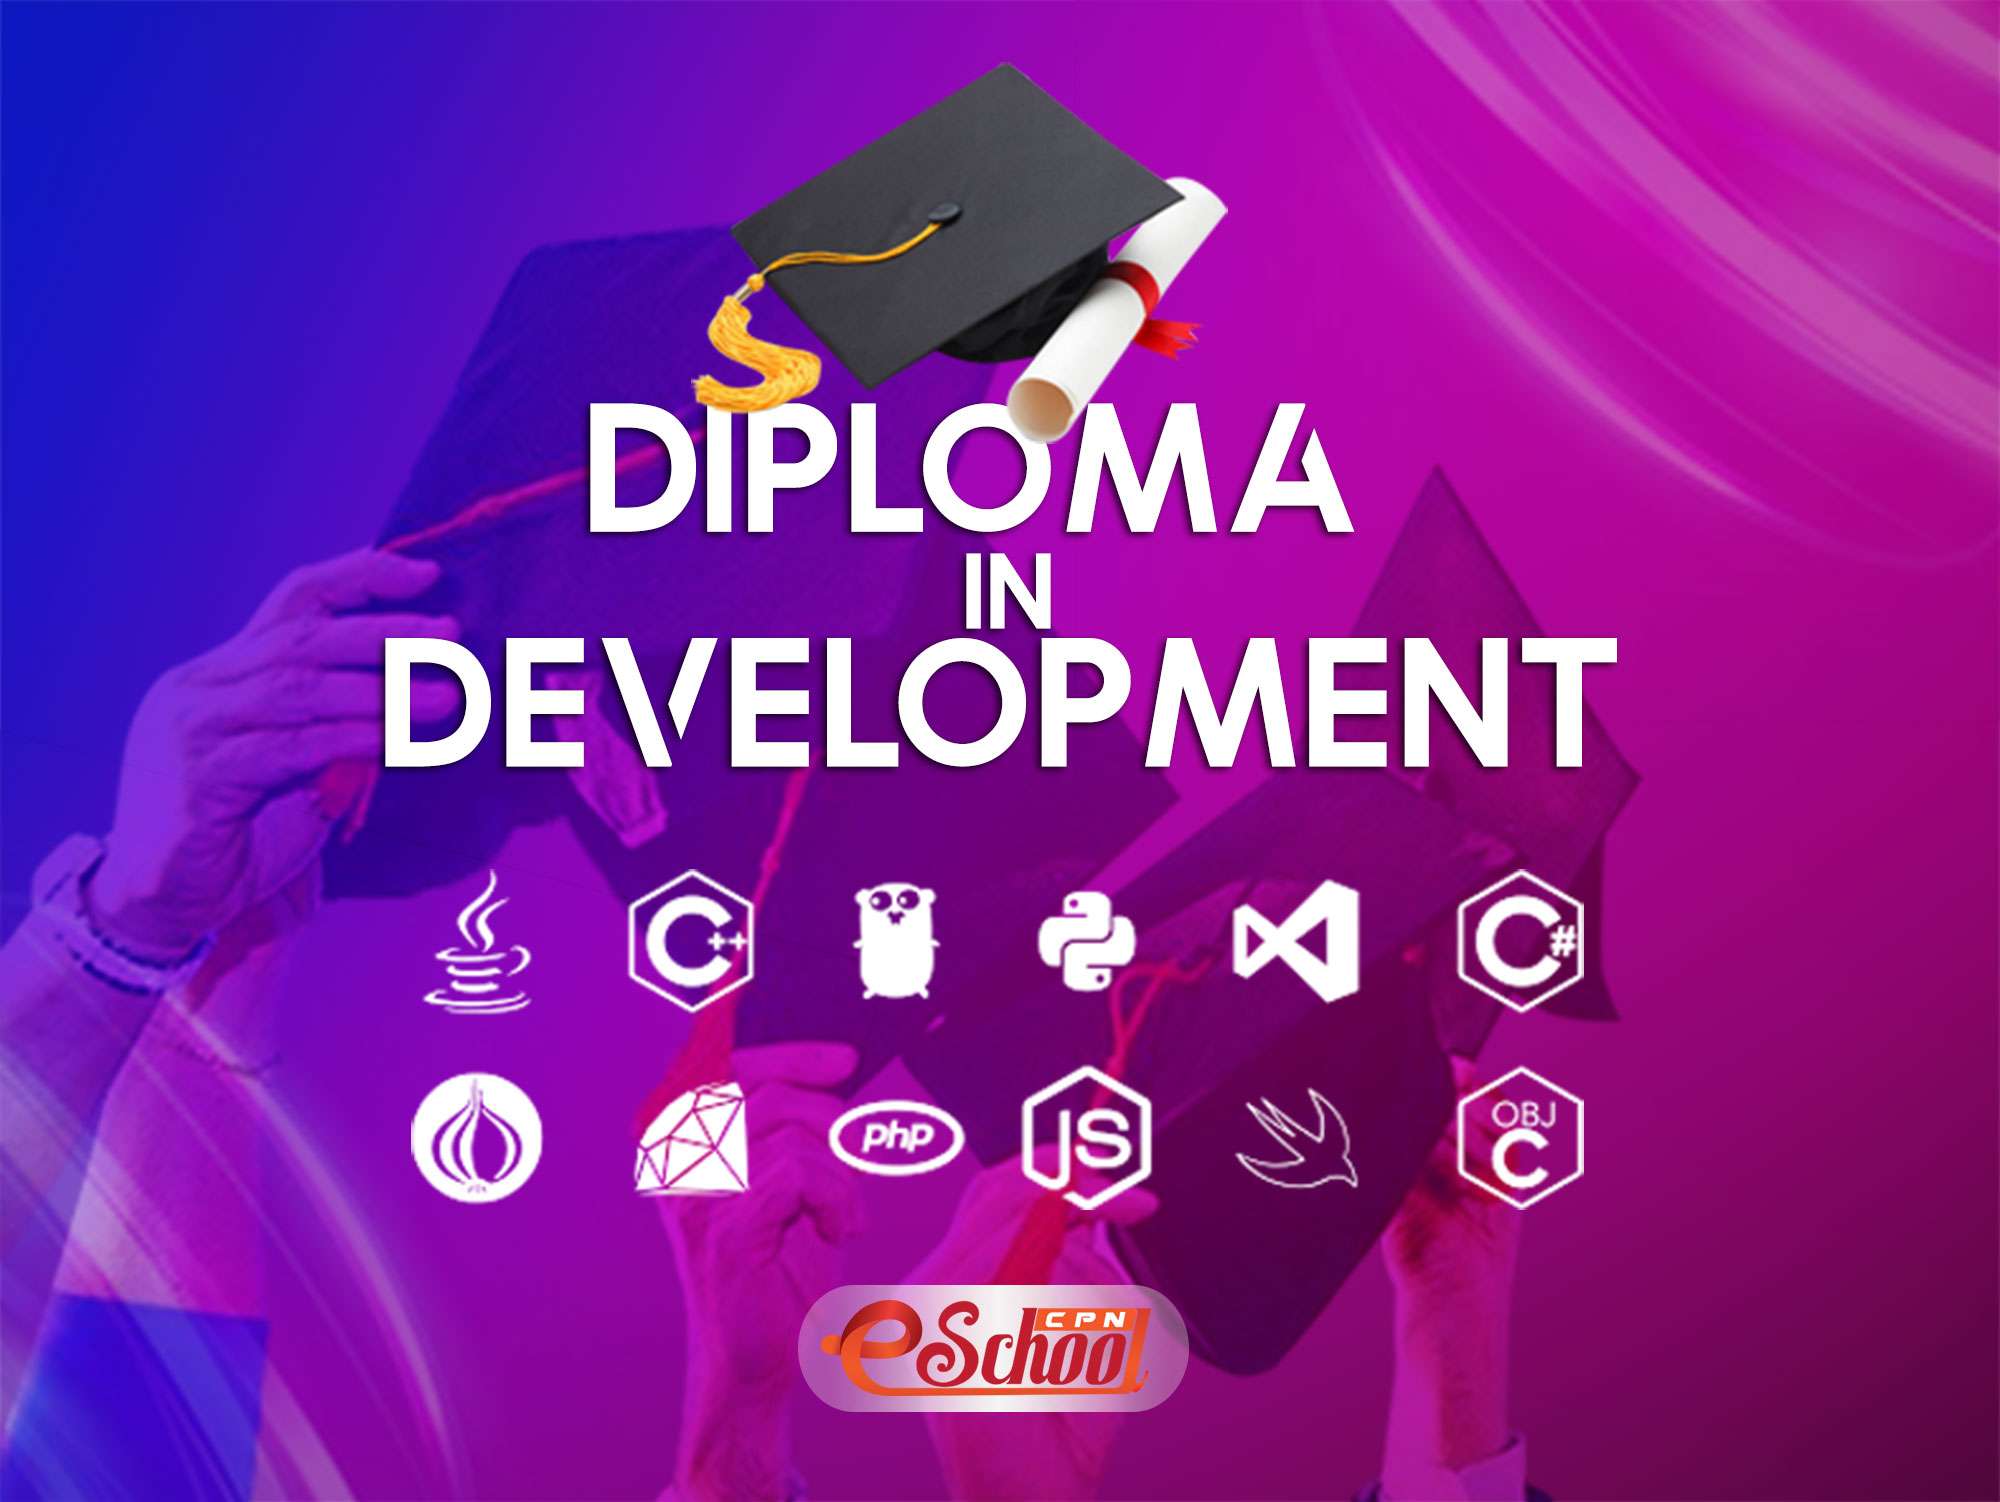 Diploma-in-development2